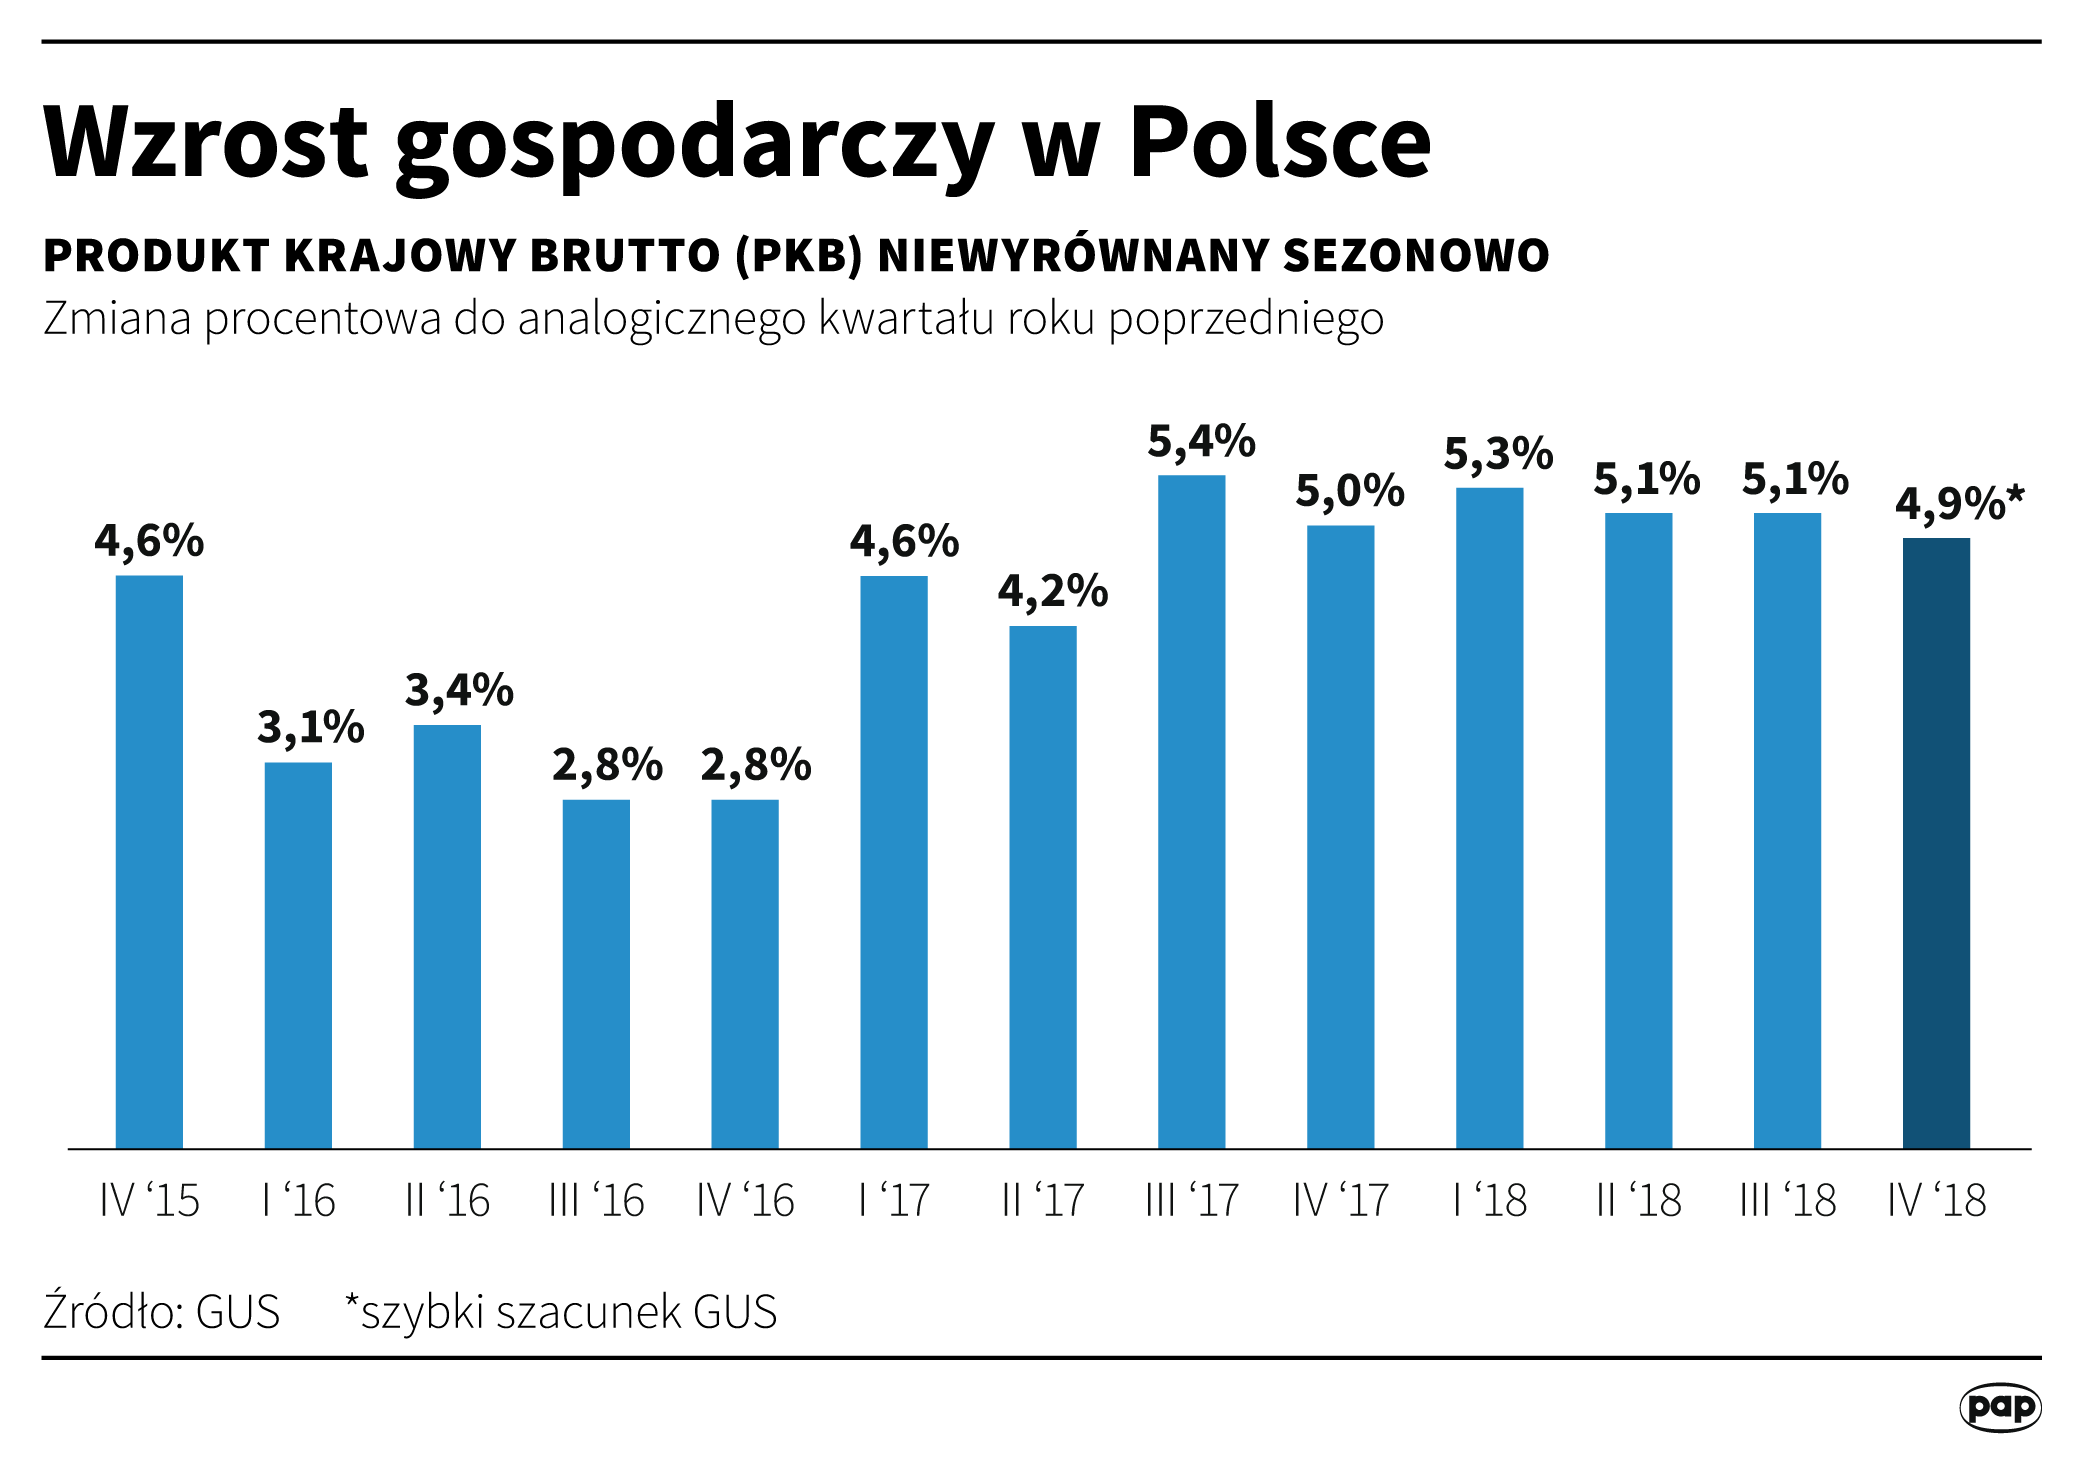 Wzrost PKB Polski w czwartym kwartale 2018 roku